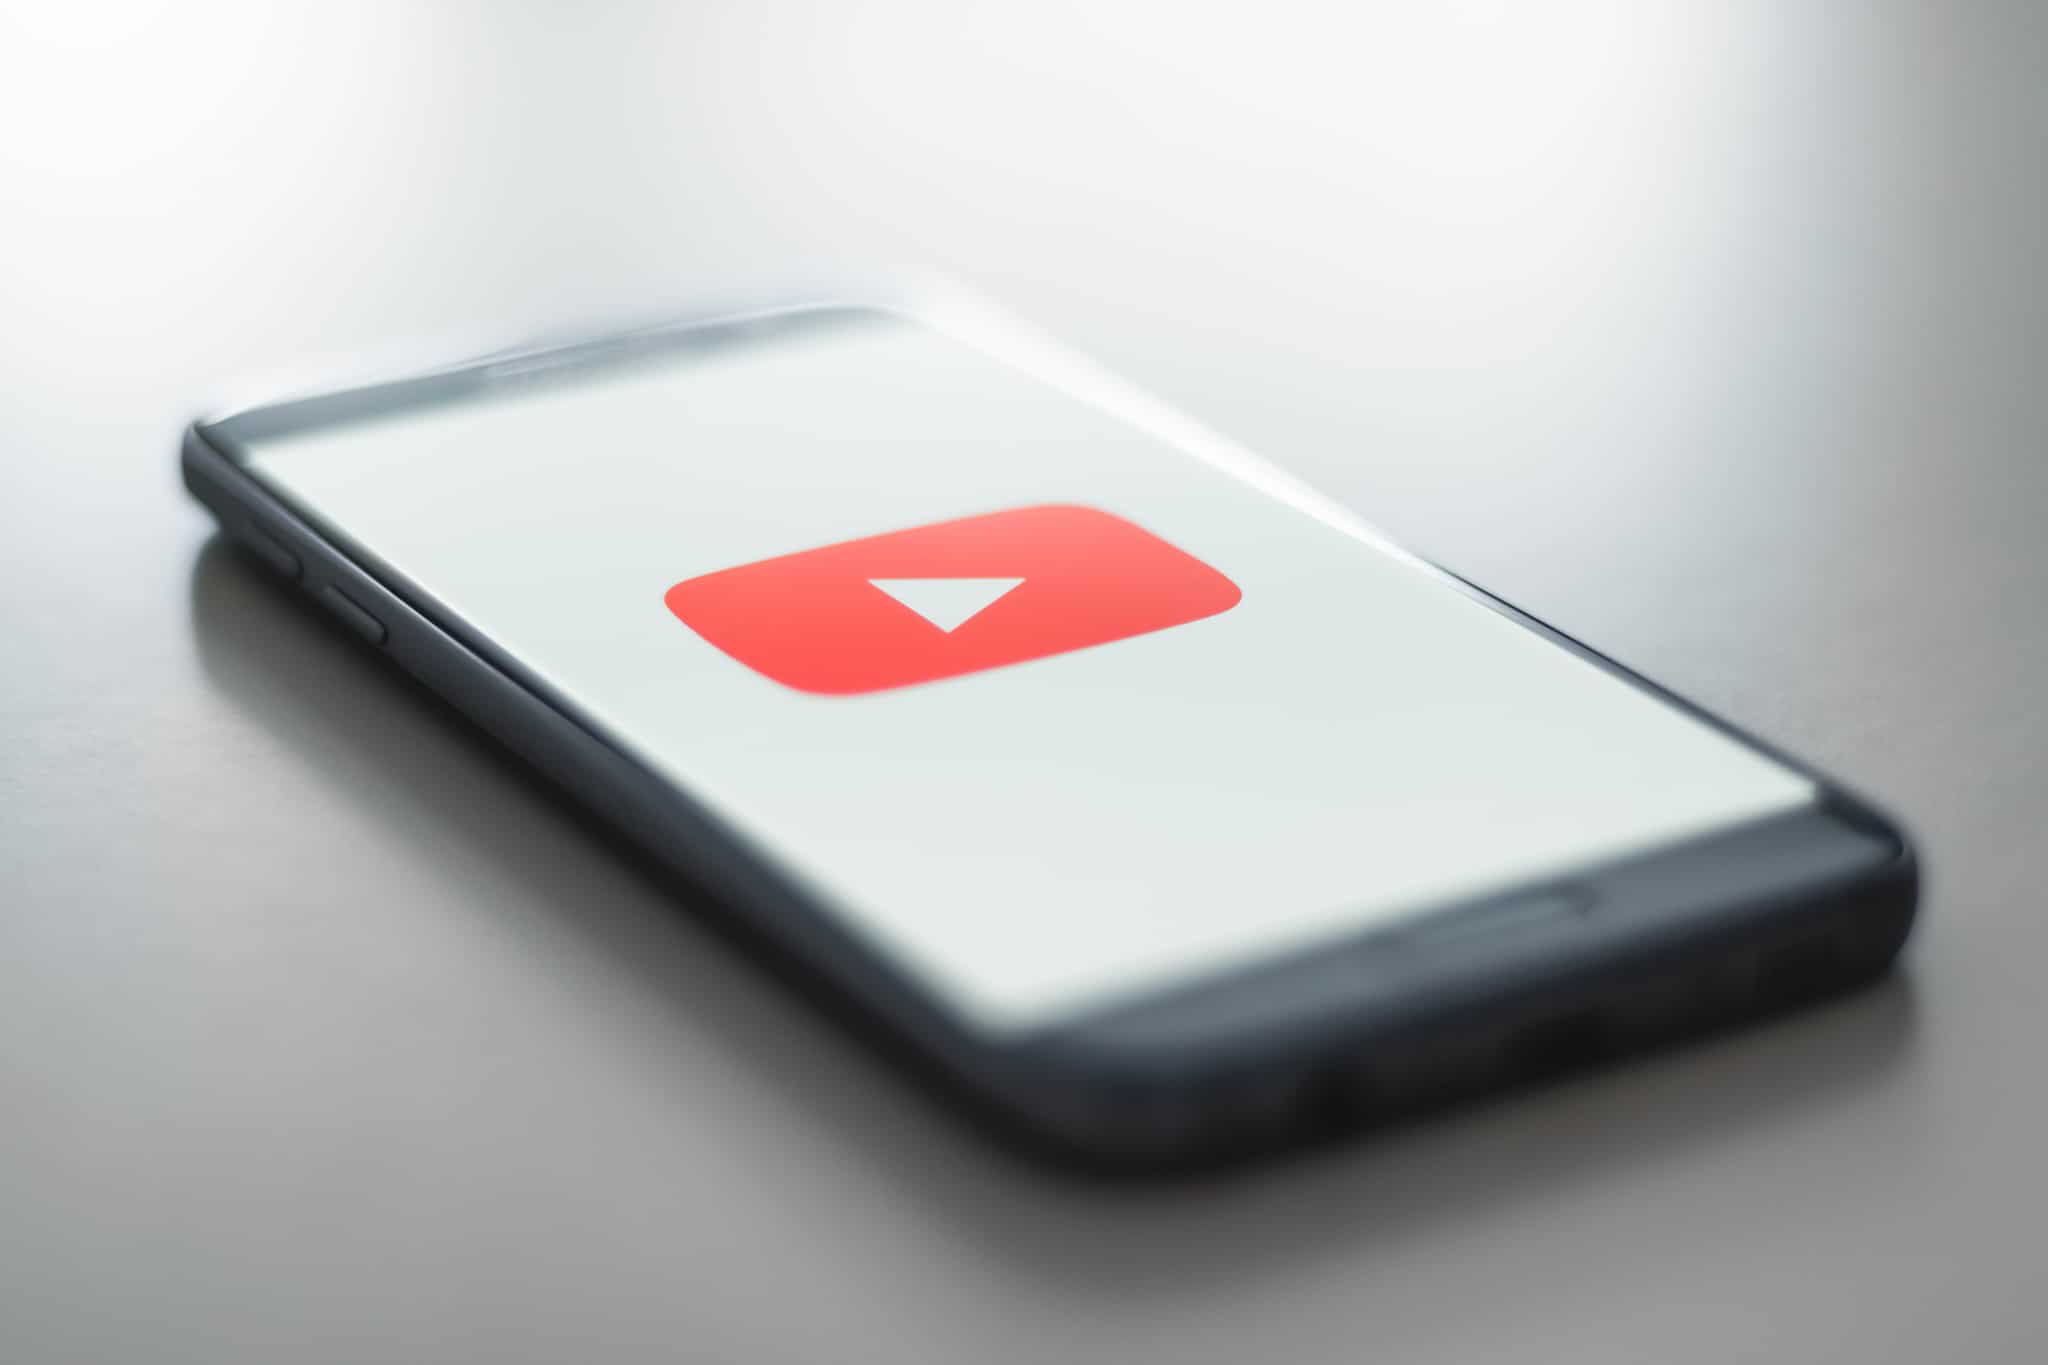 CEO Youtube Susan Wojcicki đề ra 4 ưu tiên của Youtube trong năm 2021